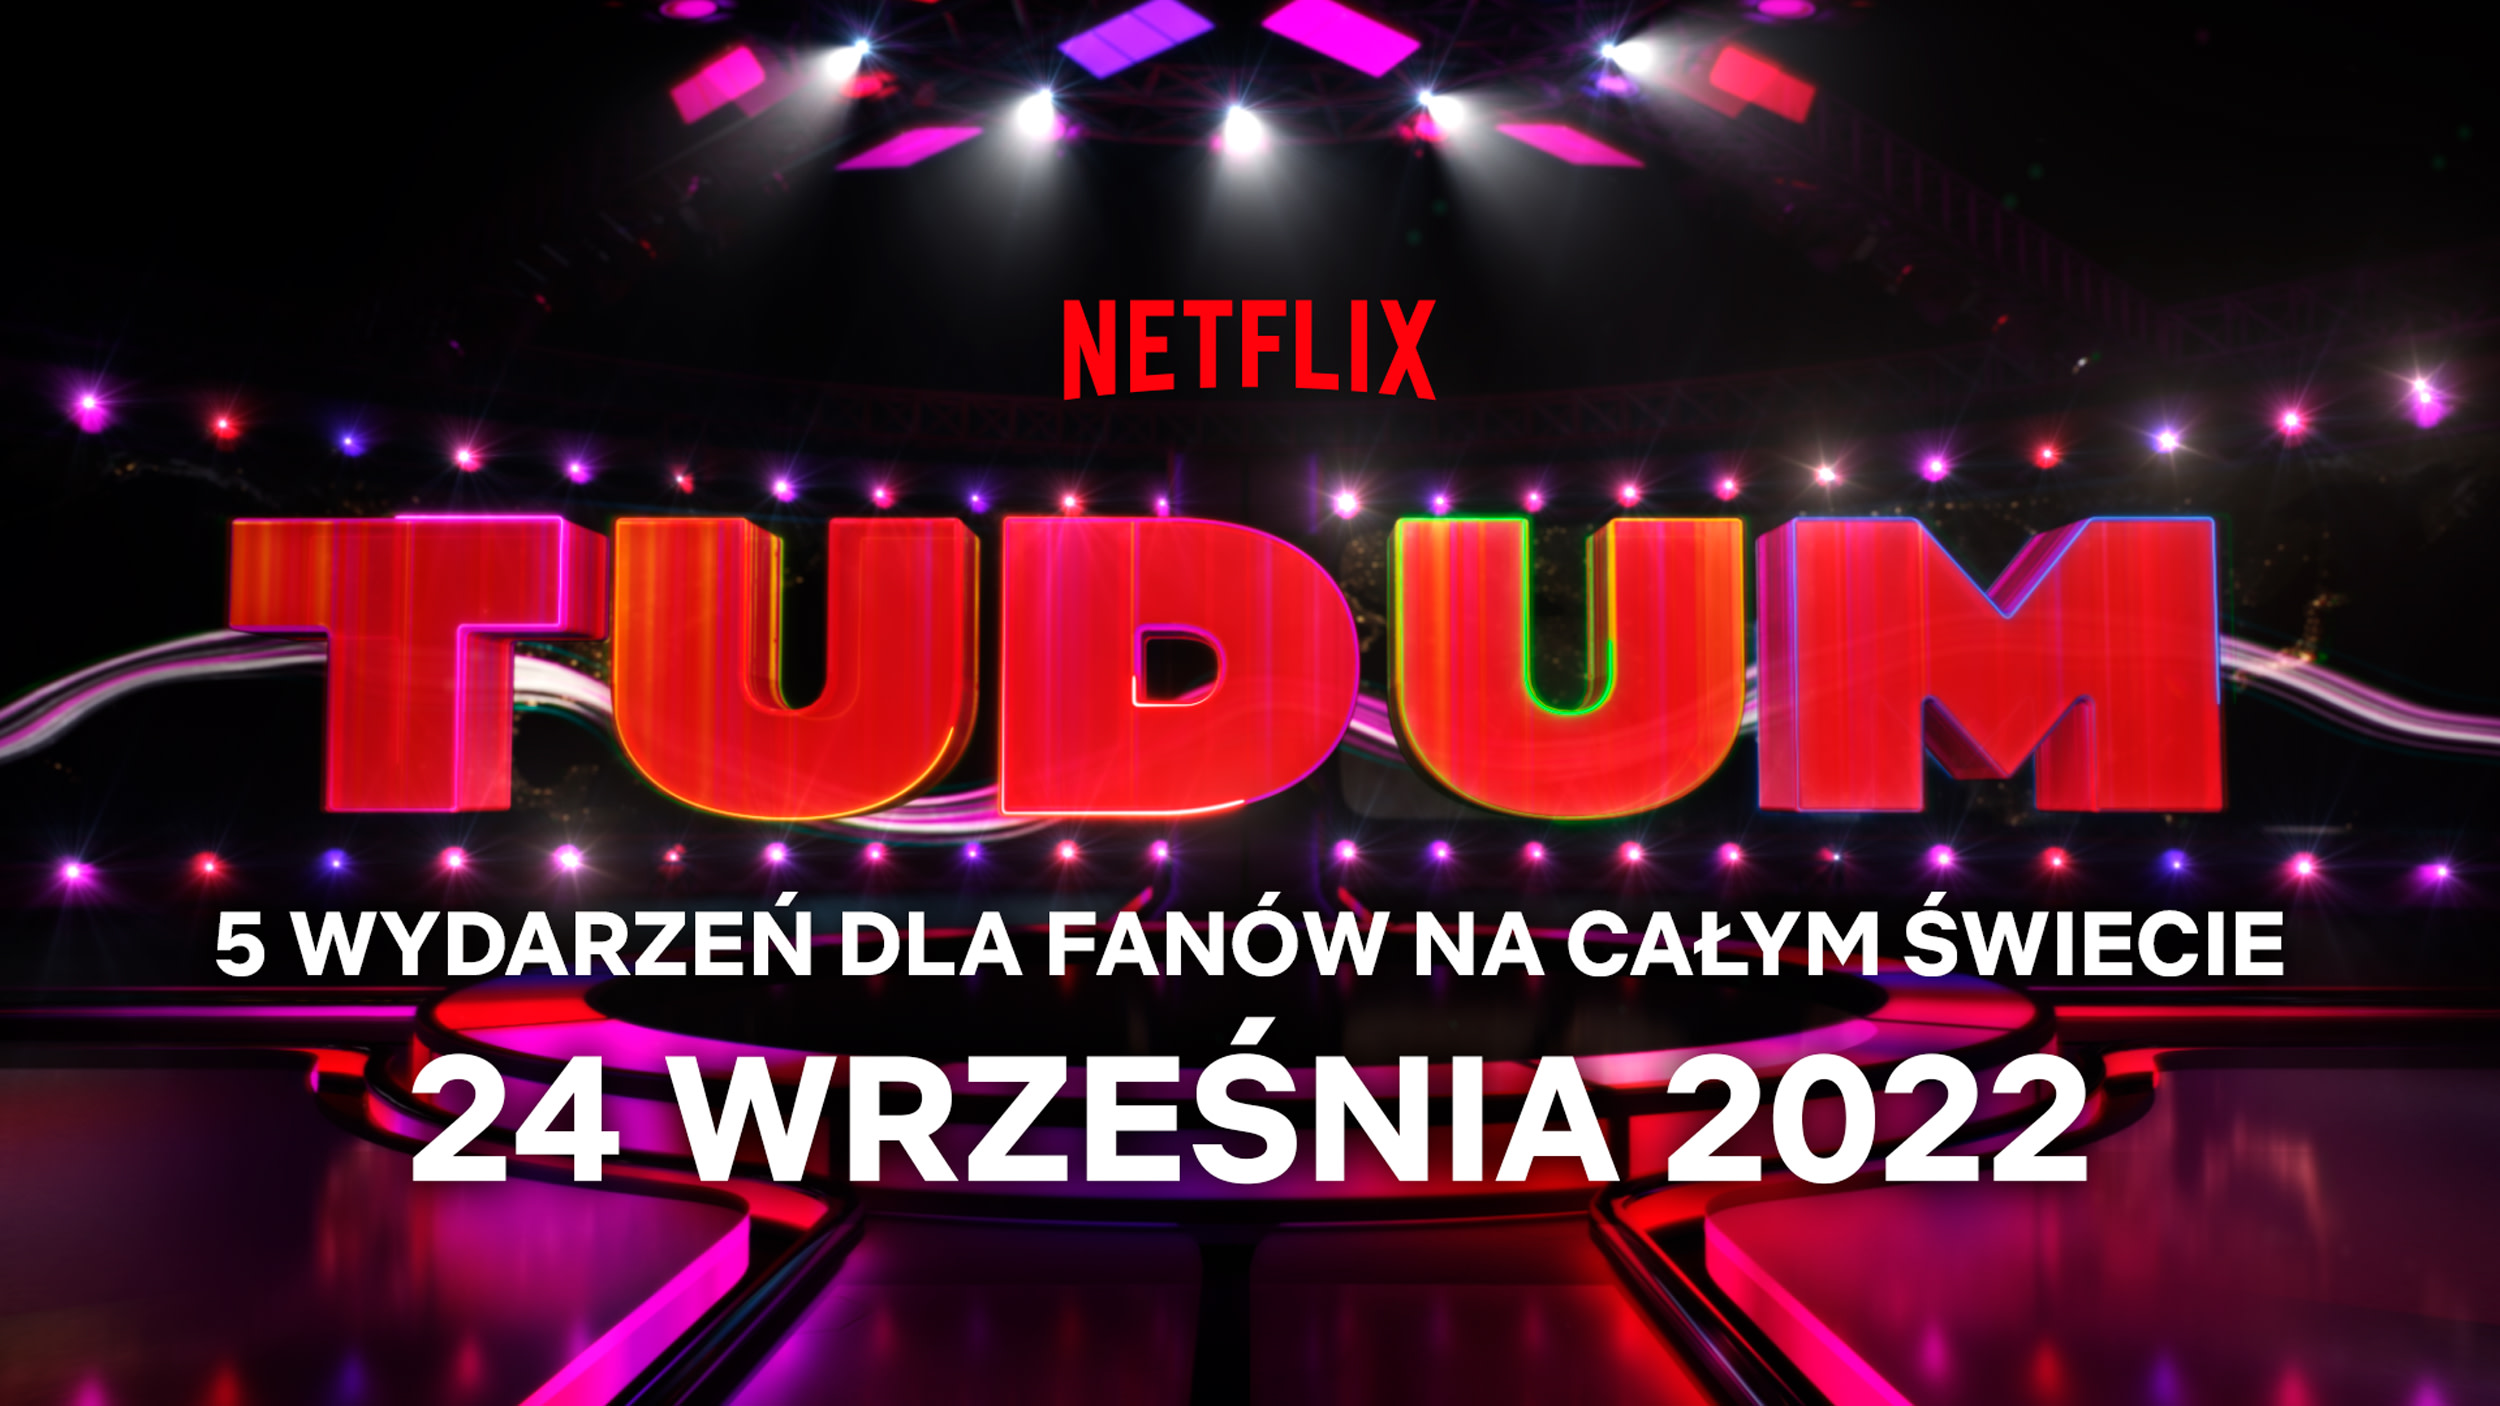 Zarezerwuj ten termin! Tudum — światowe wydarzenie dla fanów Netflix powraca już we wrześniu